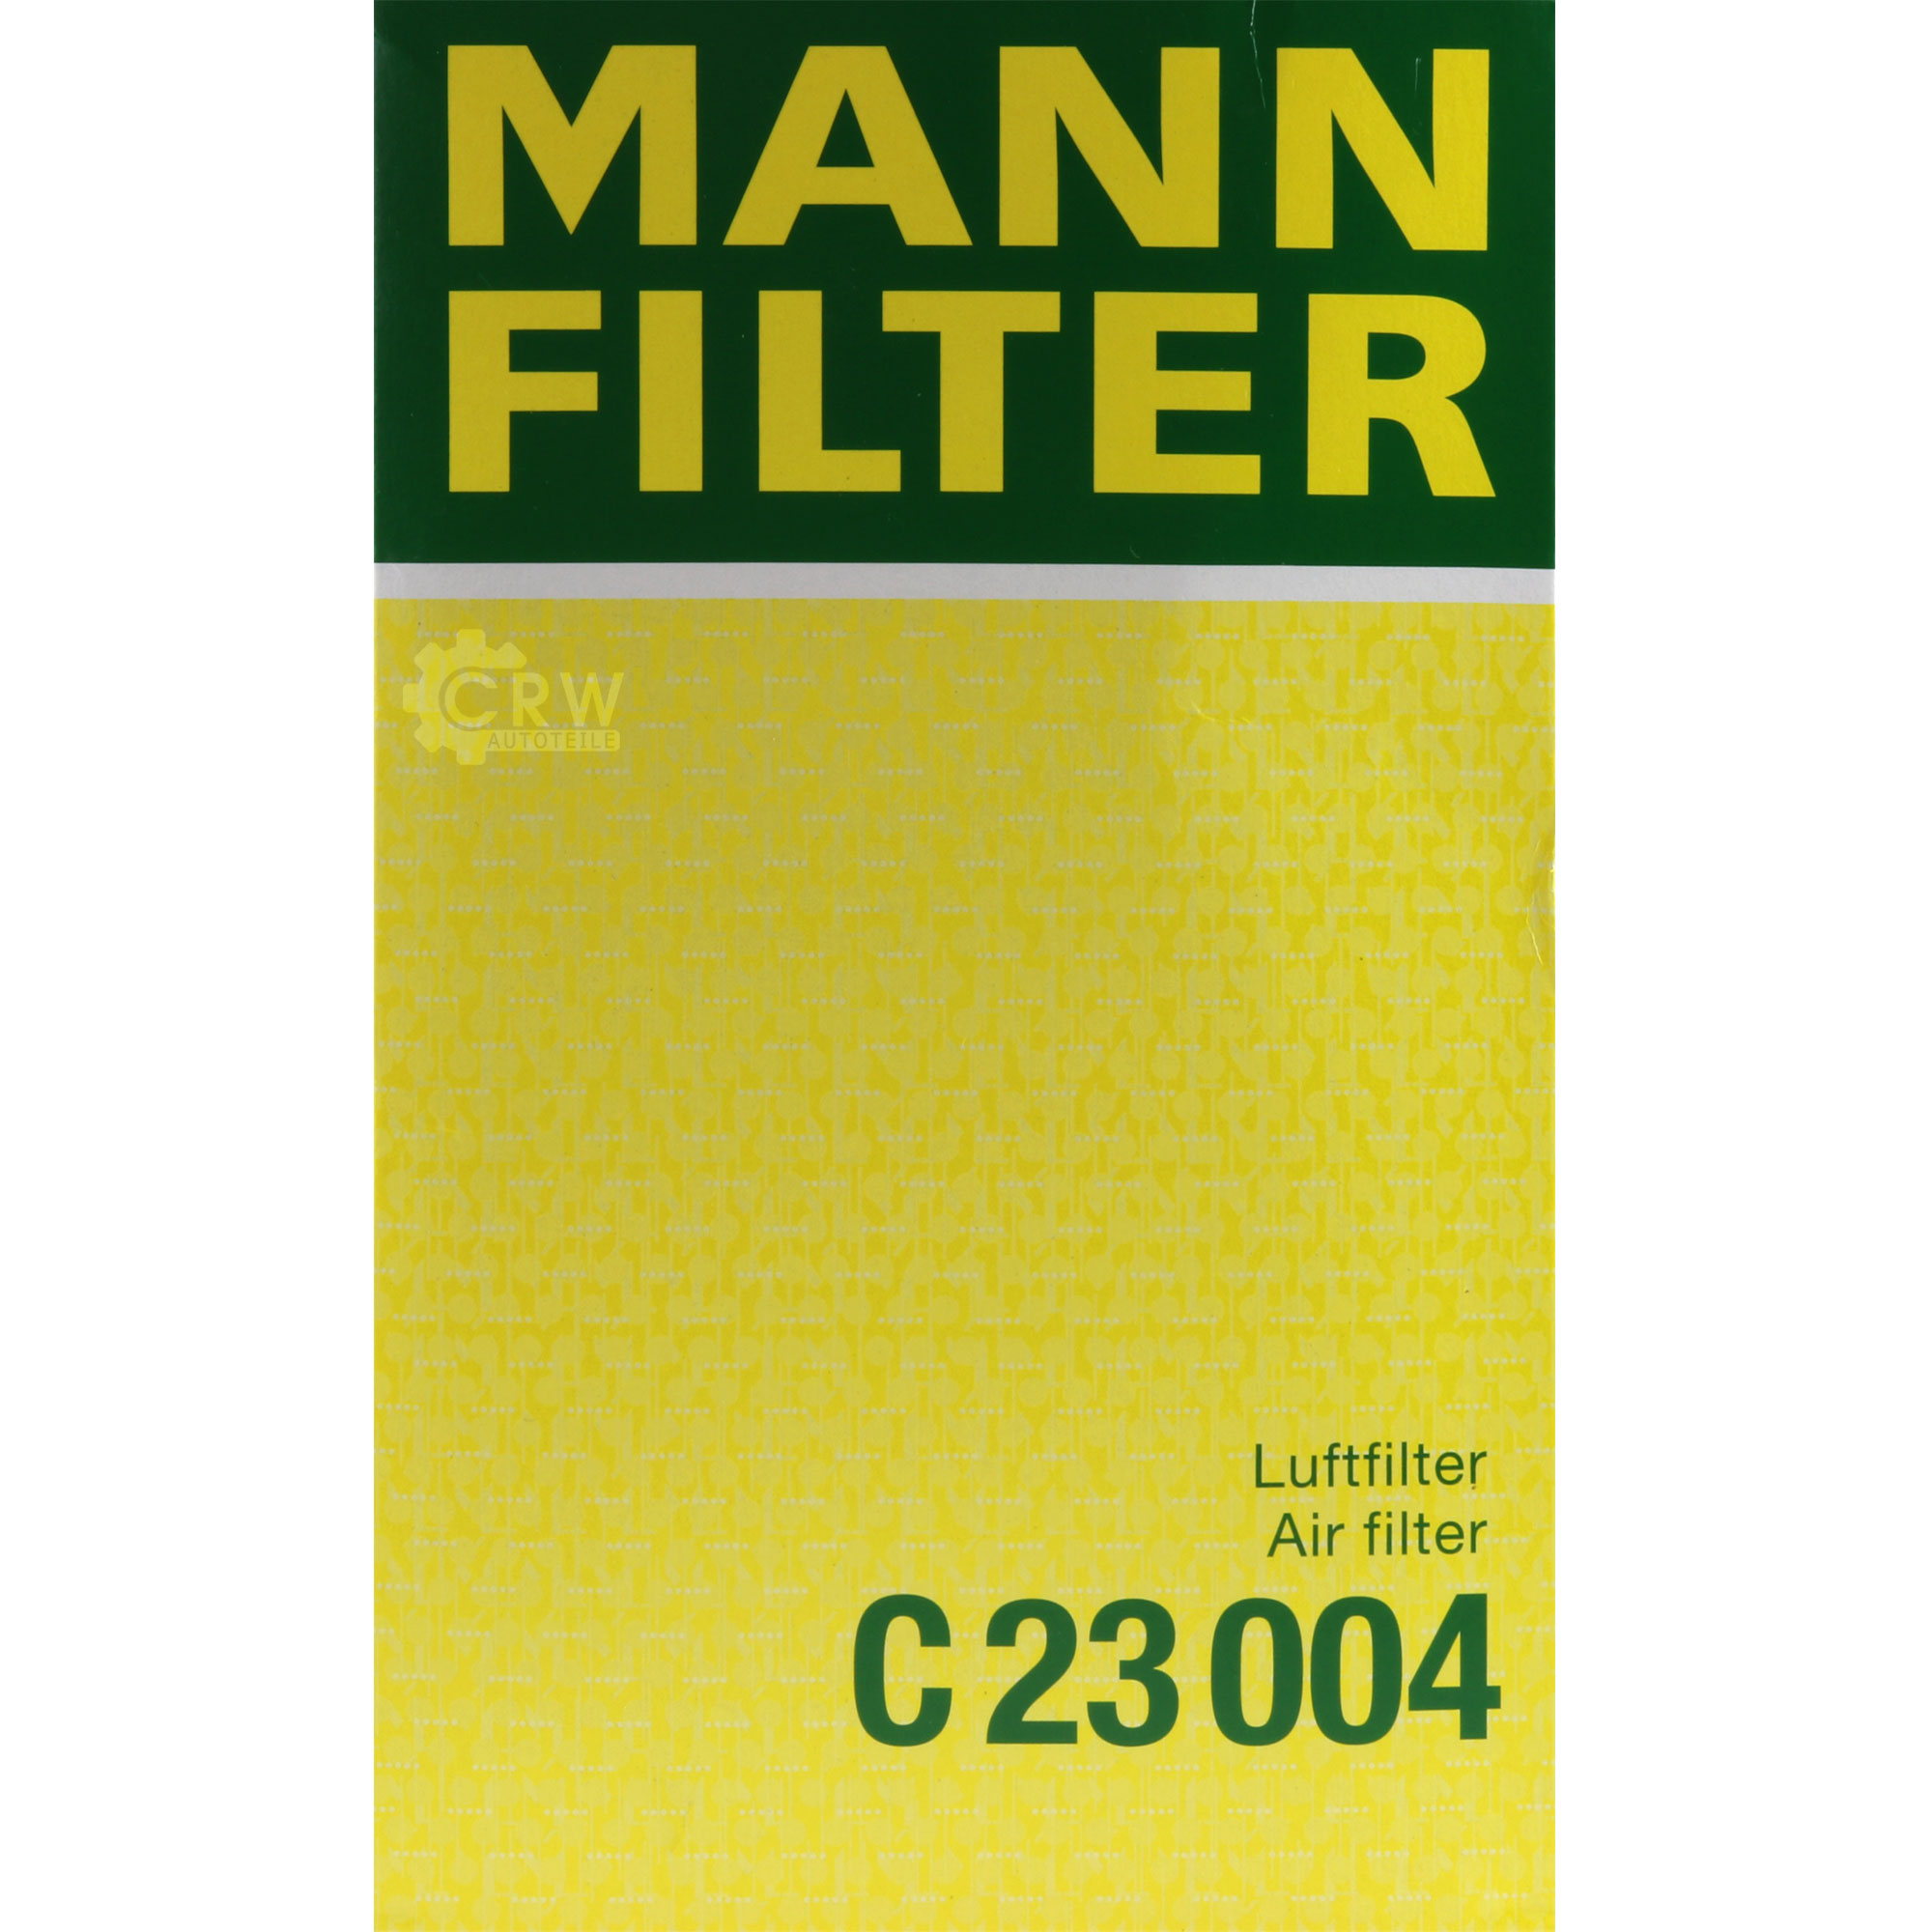 MANN-FILTER Luftfilter für Suzuki SX4 GY 1.6 VVT EY 1.5 Fiat Sedici FY_